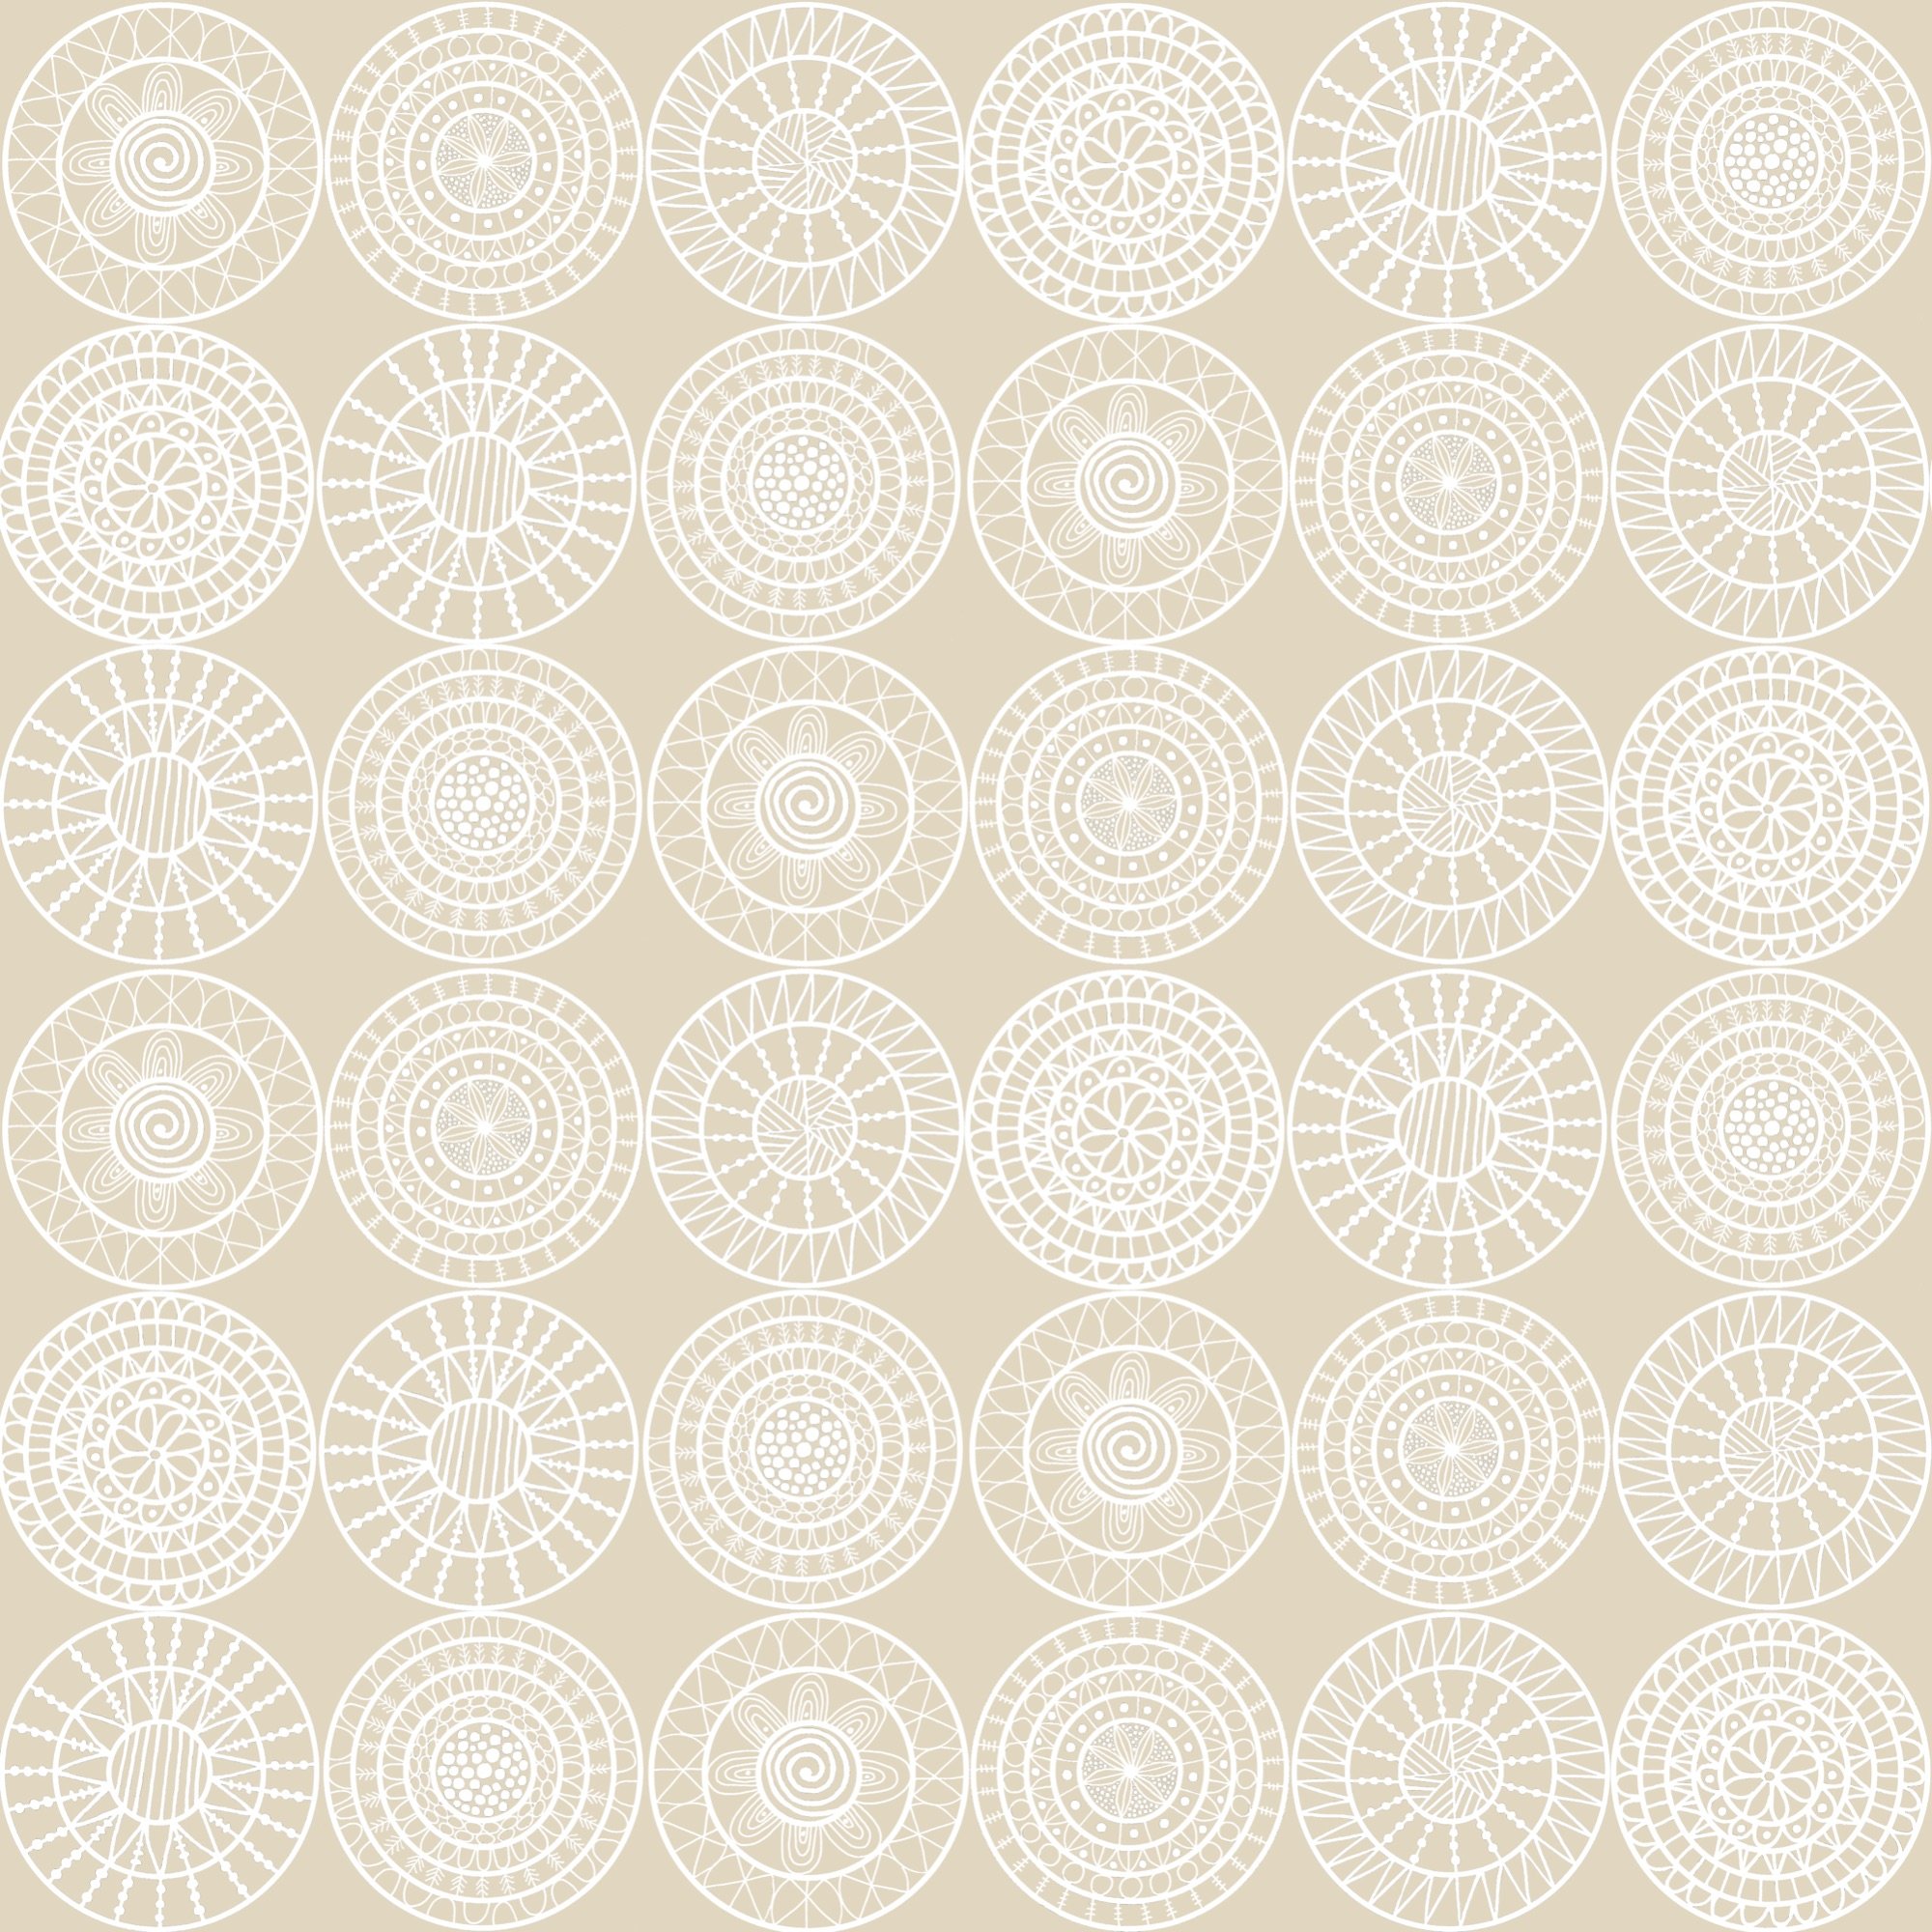 Concentric Circles fabric design